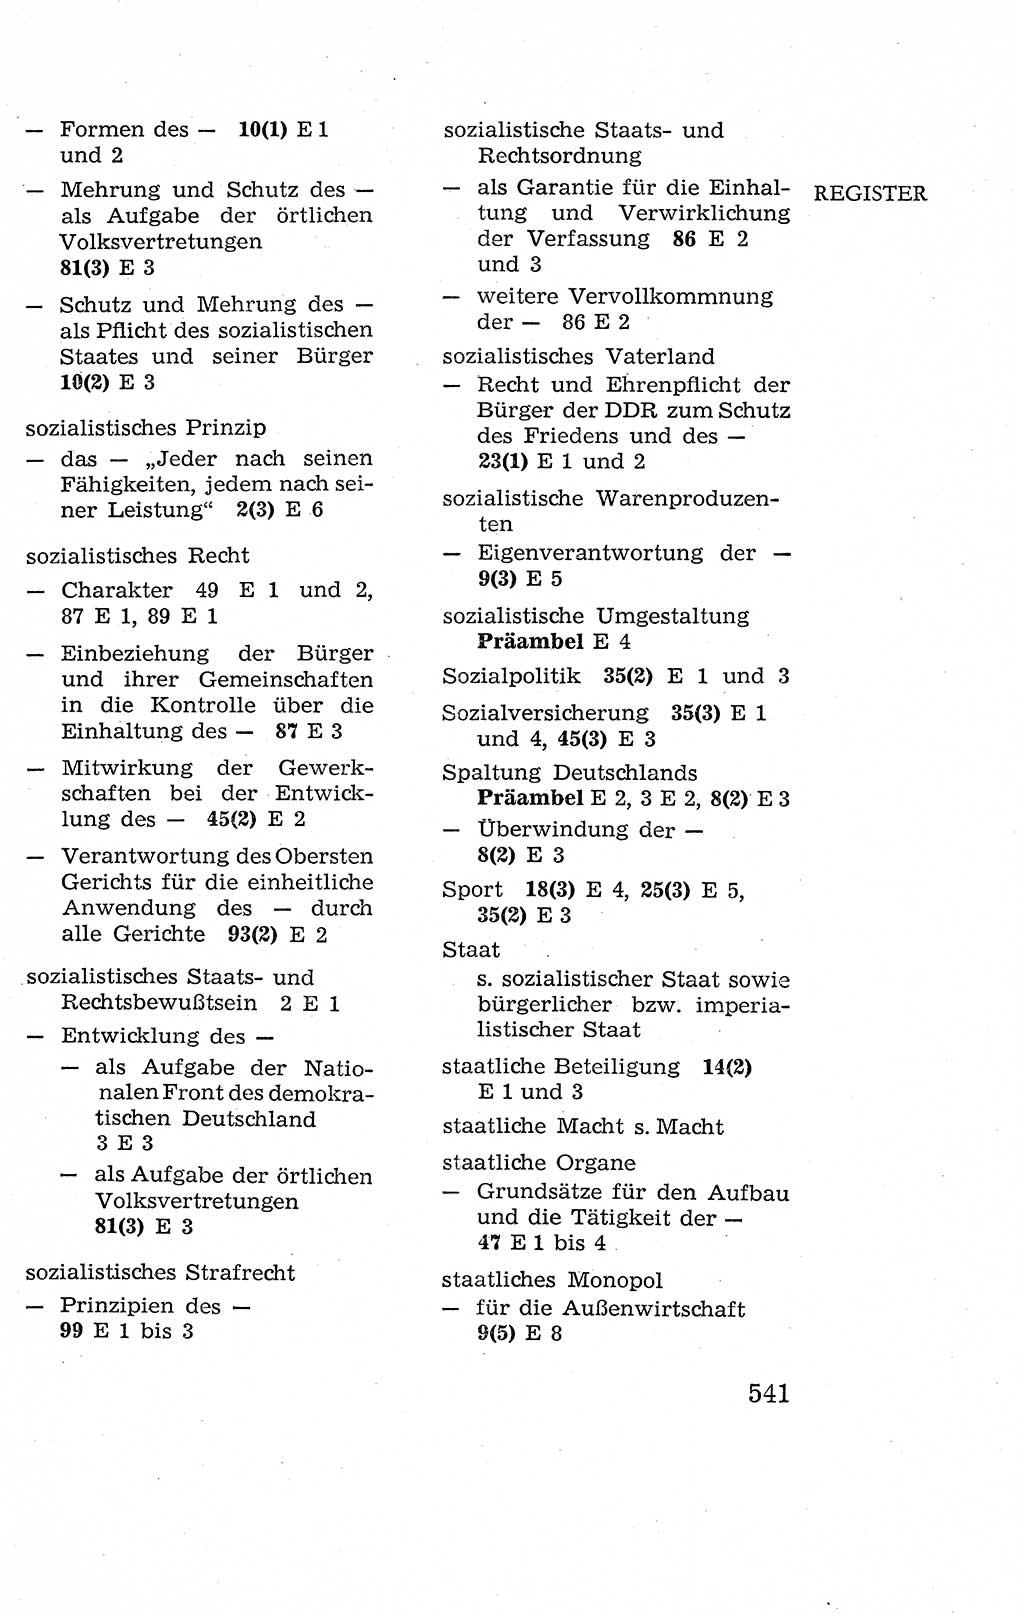 Verfassung der Deutschen Demokratischen Republik (DDR), Dokumente, Kommentar 1969, Band 2, Seite 541 (Verf. DDR Dok. Komm. 1969, Bd. 2, S. 541)